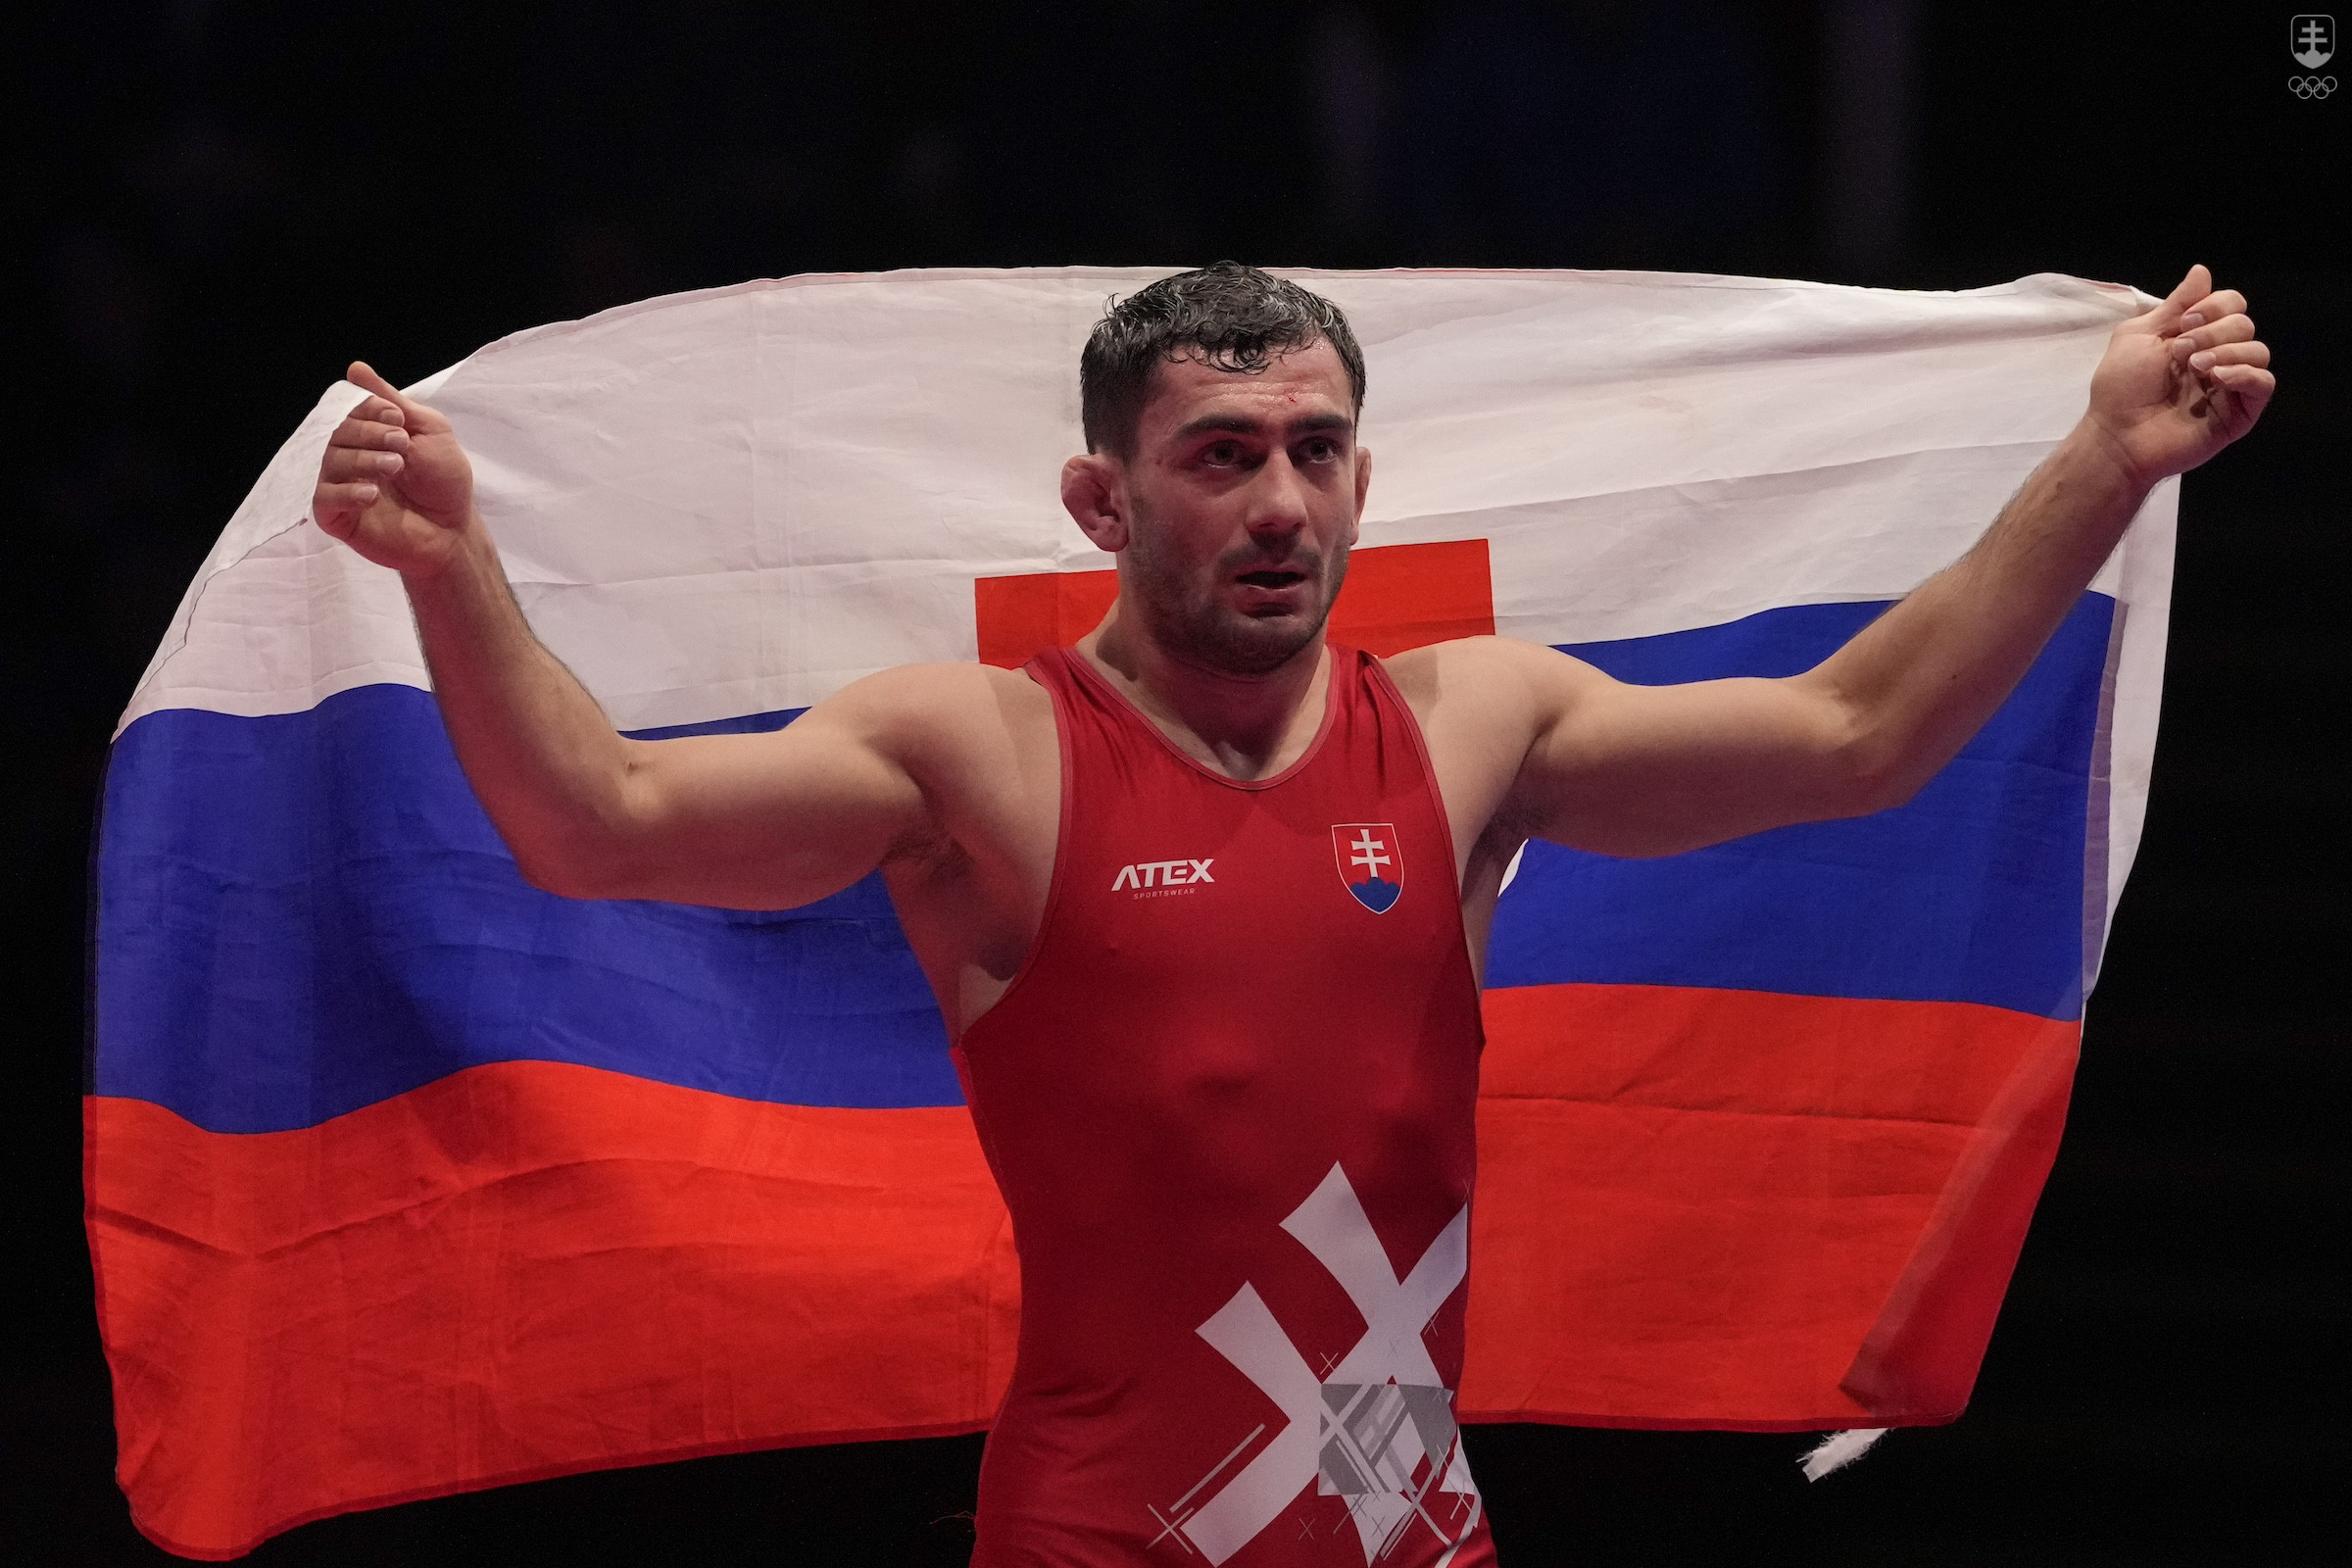 ajmuraz Salkazanov sa stal štvrtýkrát za sebou majstrom Európy vo voľnom štýle v kategórii do 74 kg.